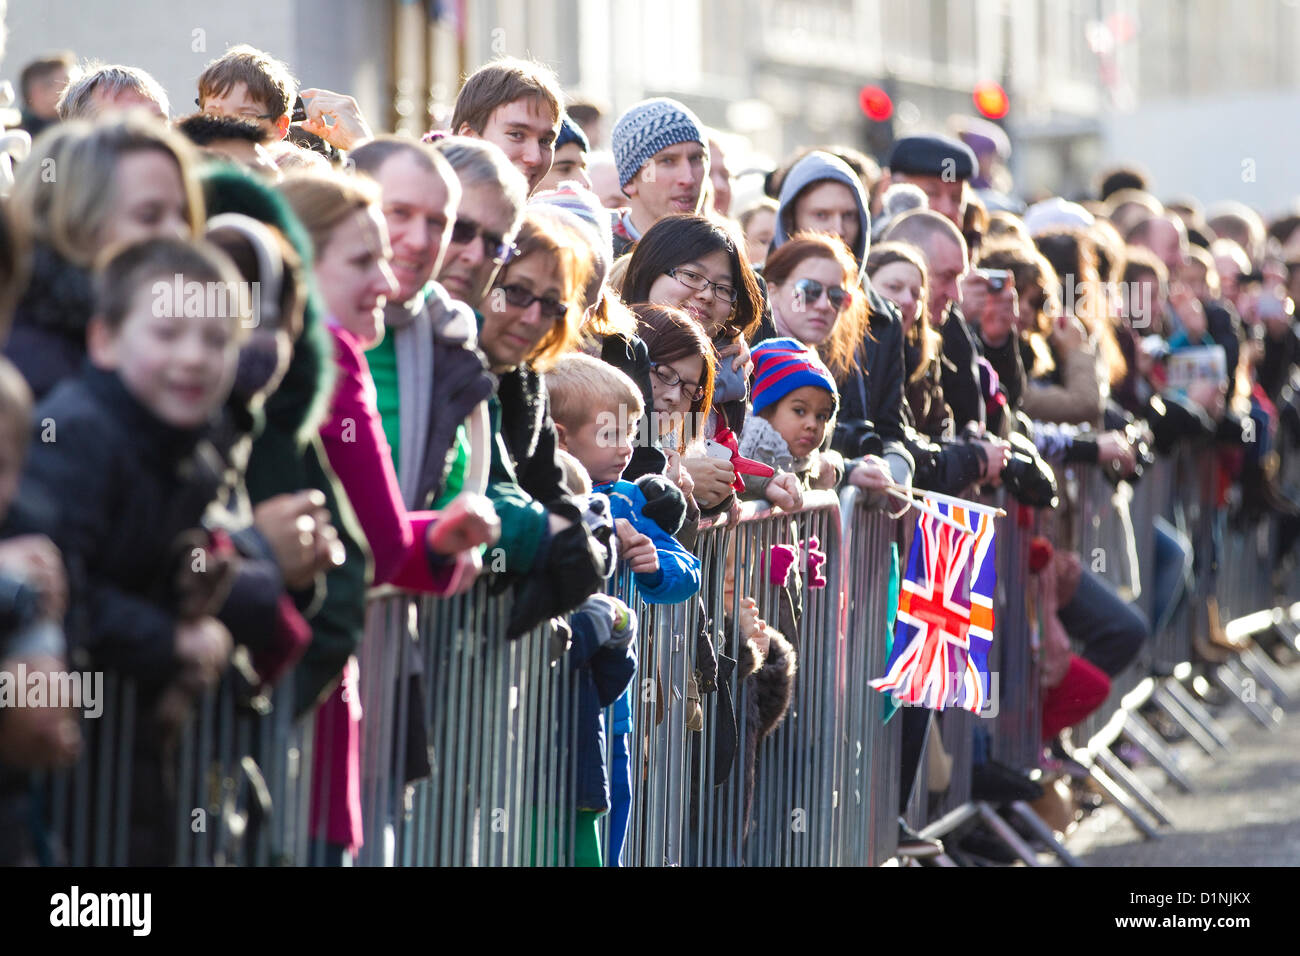 Londra il primo giorno del nuovo anno Parade 2013, Inghilterra, Regno Unito. 01.01.2013 il pubblico in grandi numeri su una rara giornata di sole oltre il periodo natalizio a Londra il primo giorno del nuovo anno Parade, Londra, Regno Unito. © Jeff Gilbert / Alamy Live News Credito: Jeff Gilbert / Alamy Live News Foto Stock